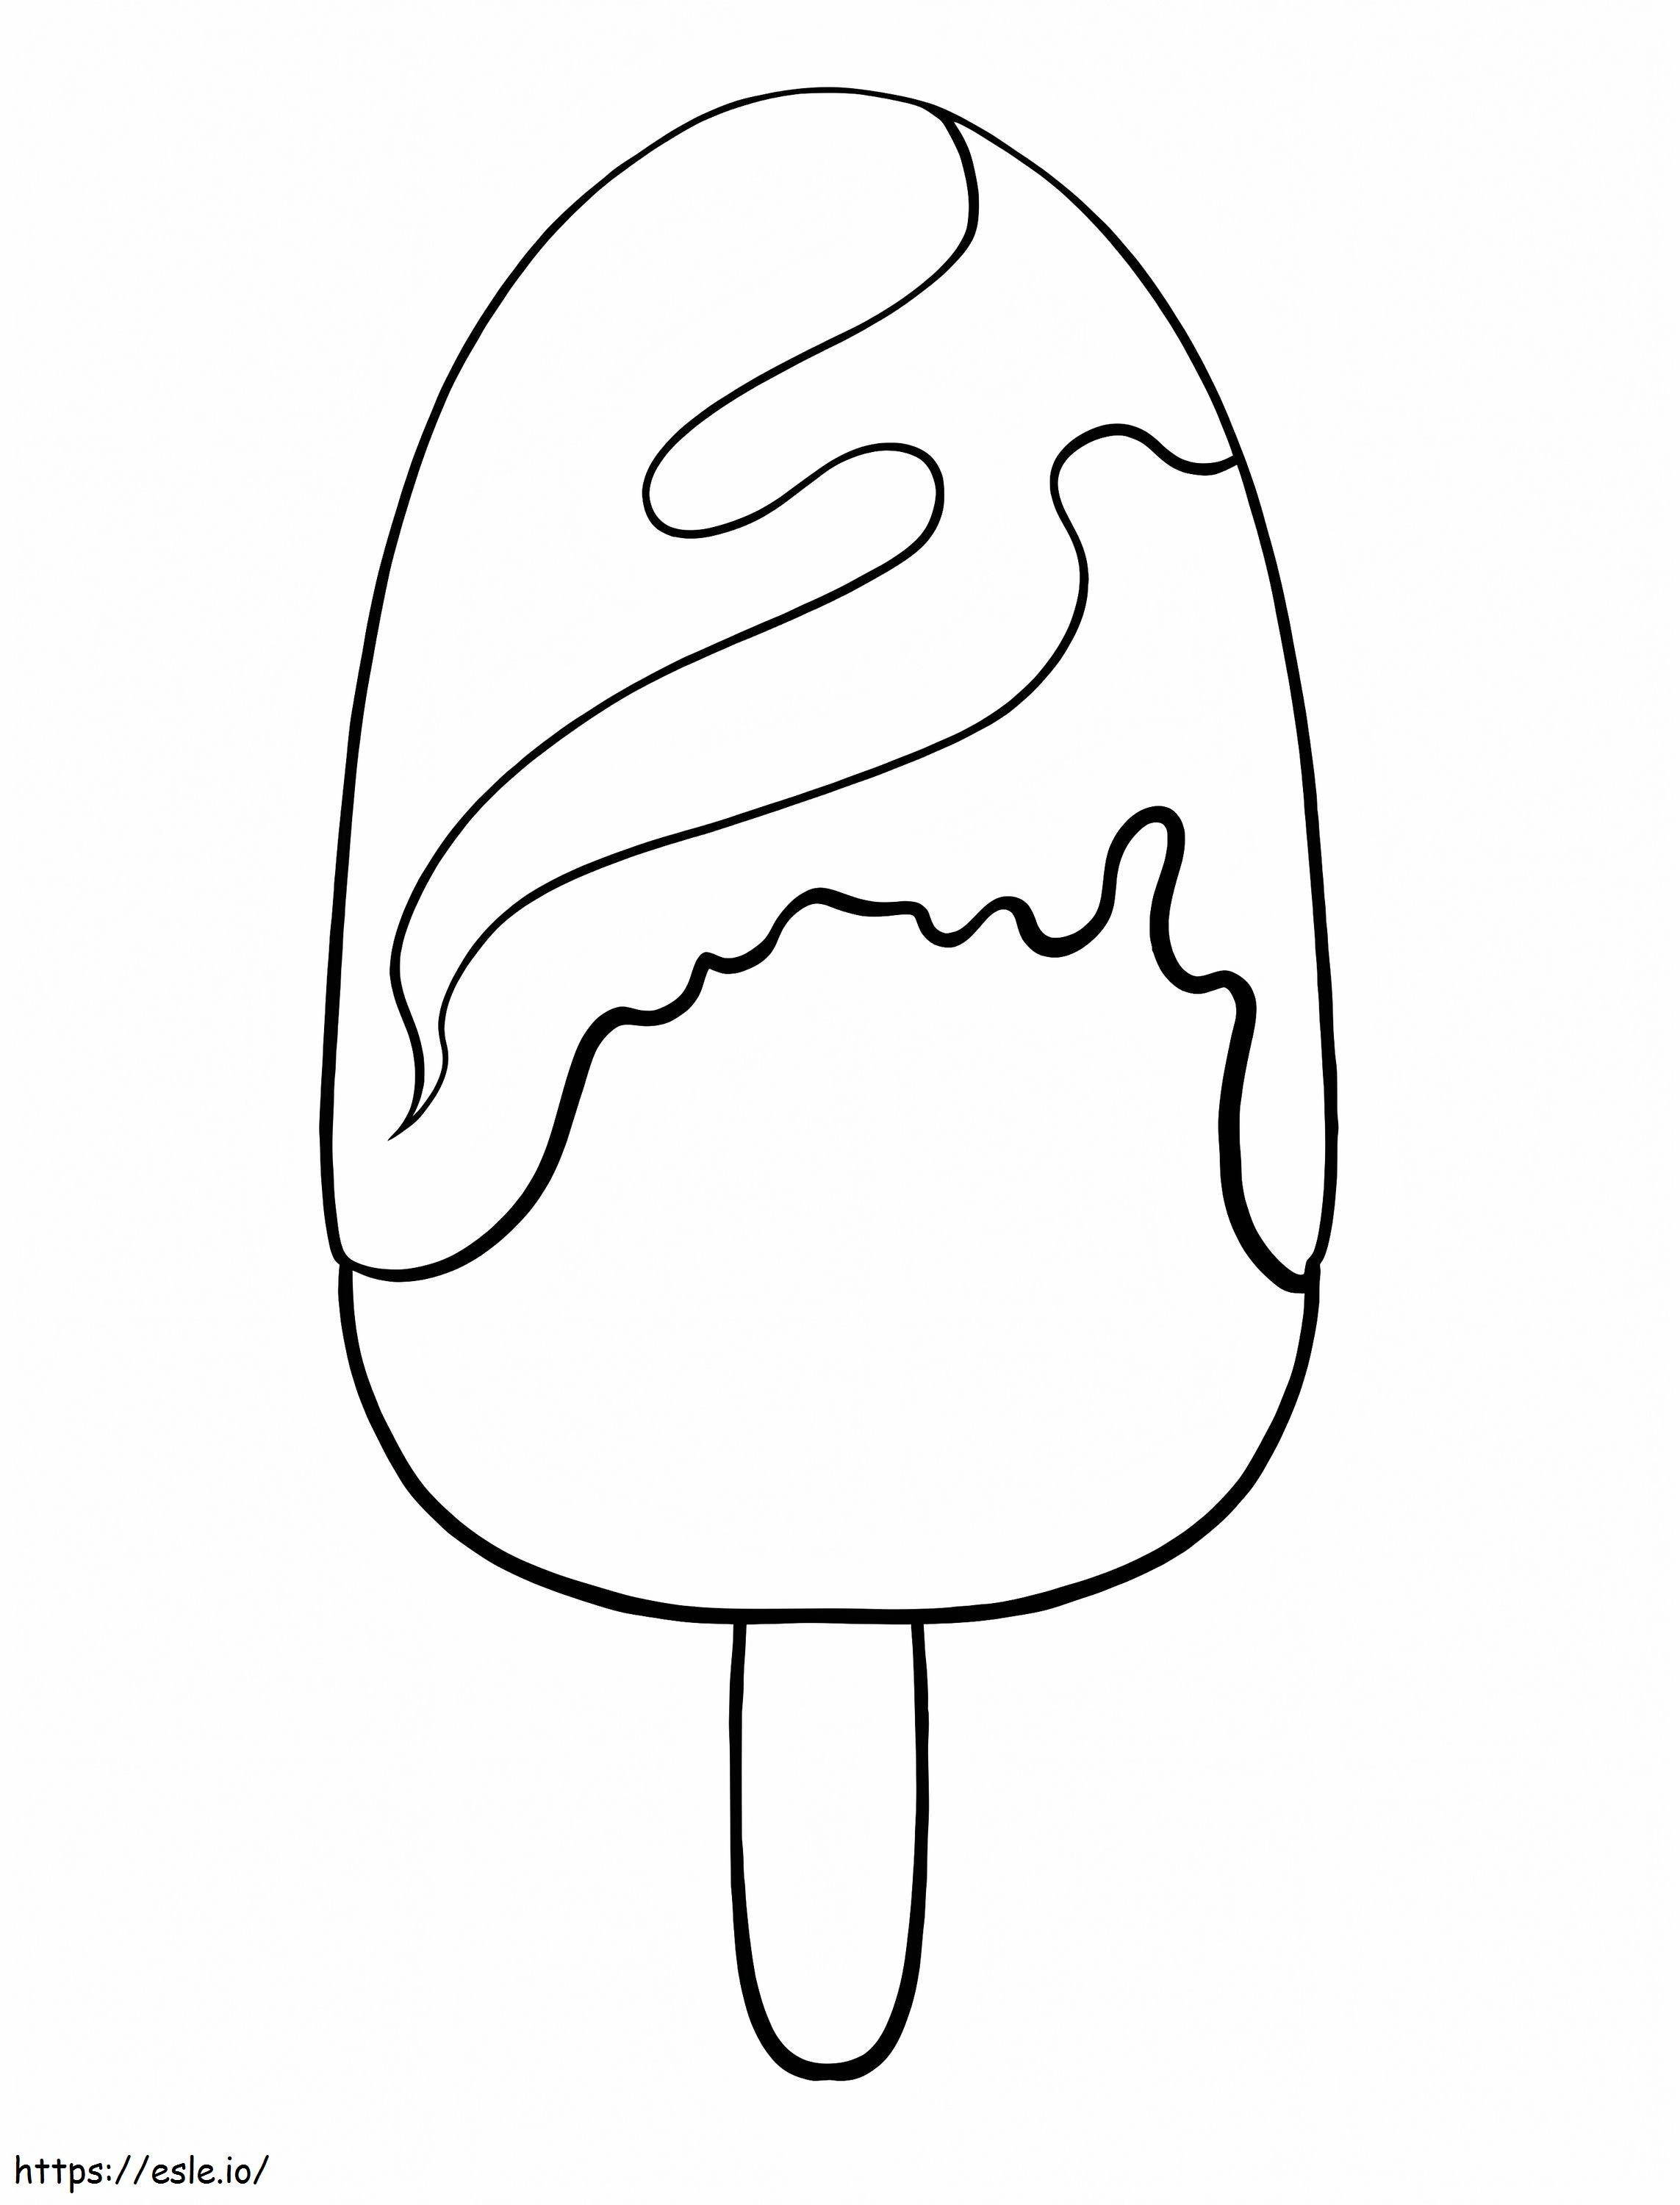 Czekoladowy Popsicle kolorowanka